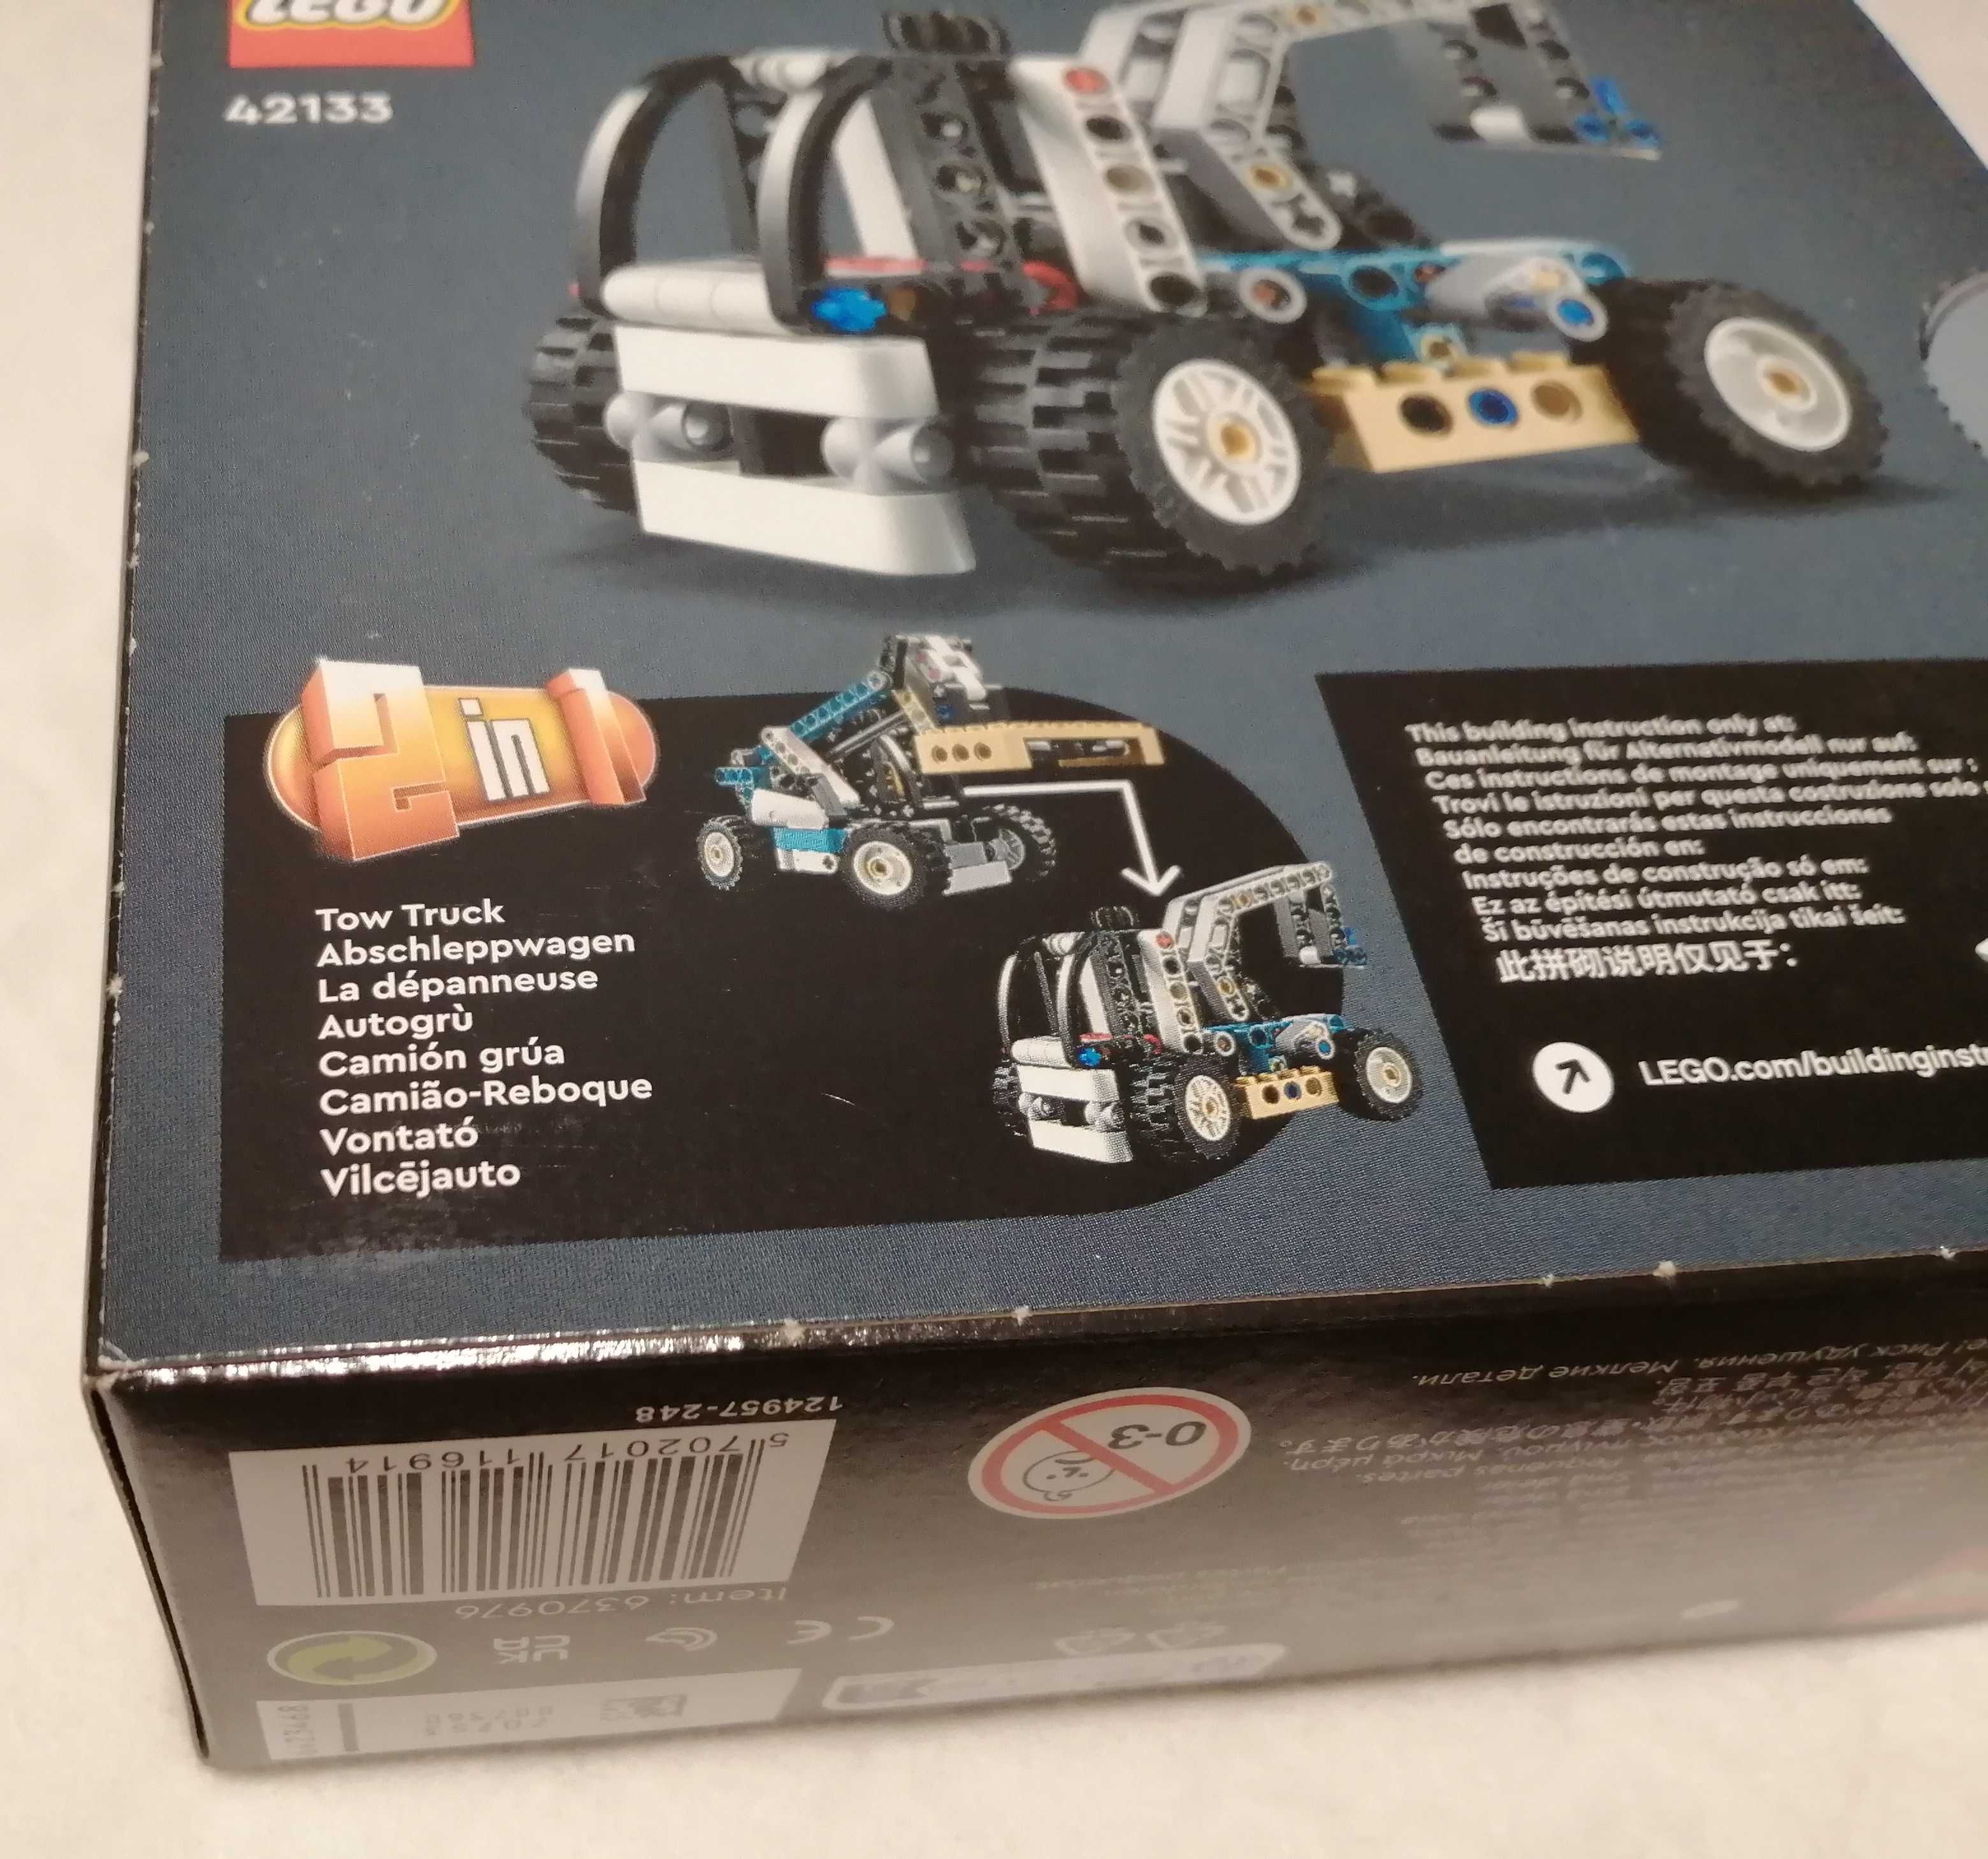 Klocki Lego Technic 42133, Ładowarka teleskopowa, 2w1 (Zabawka)